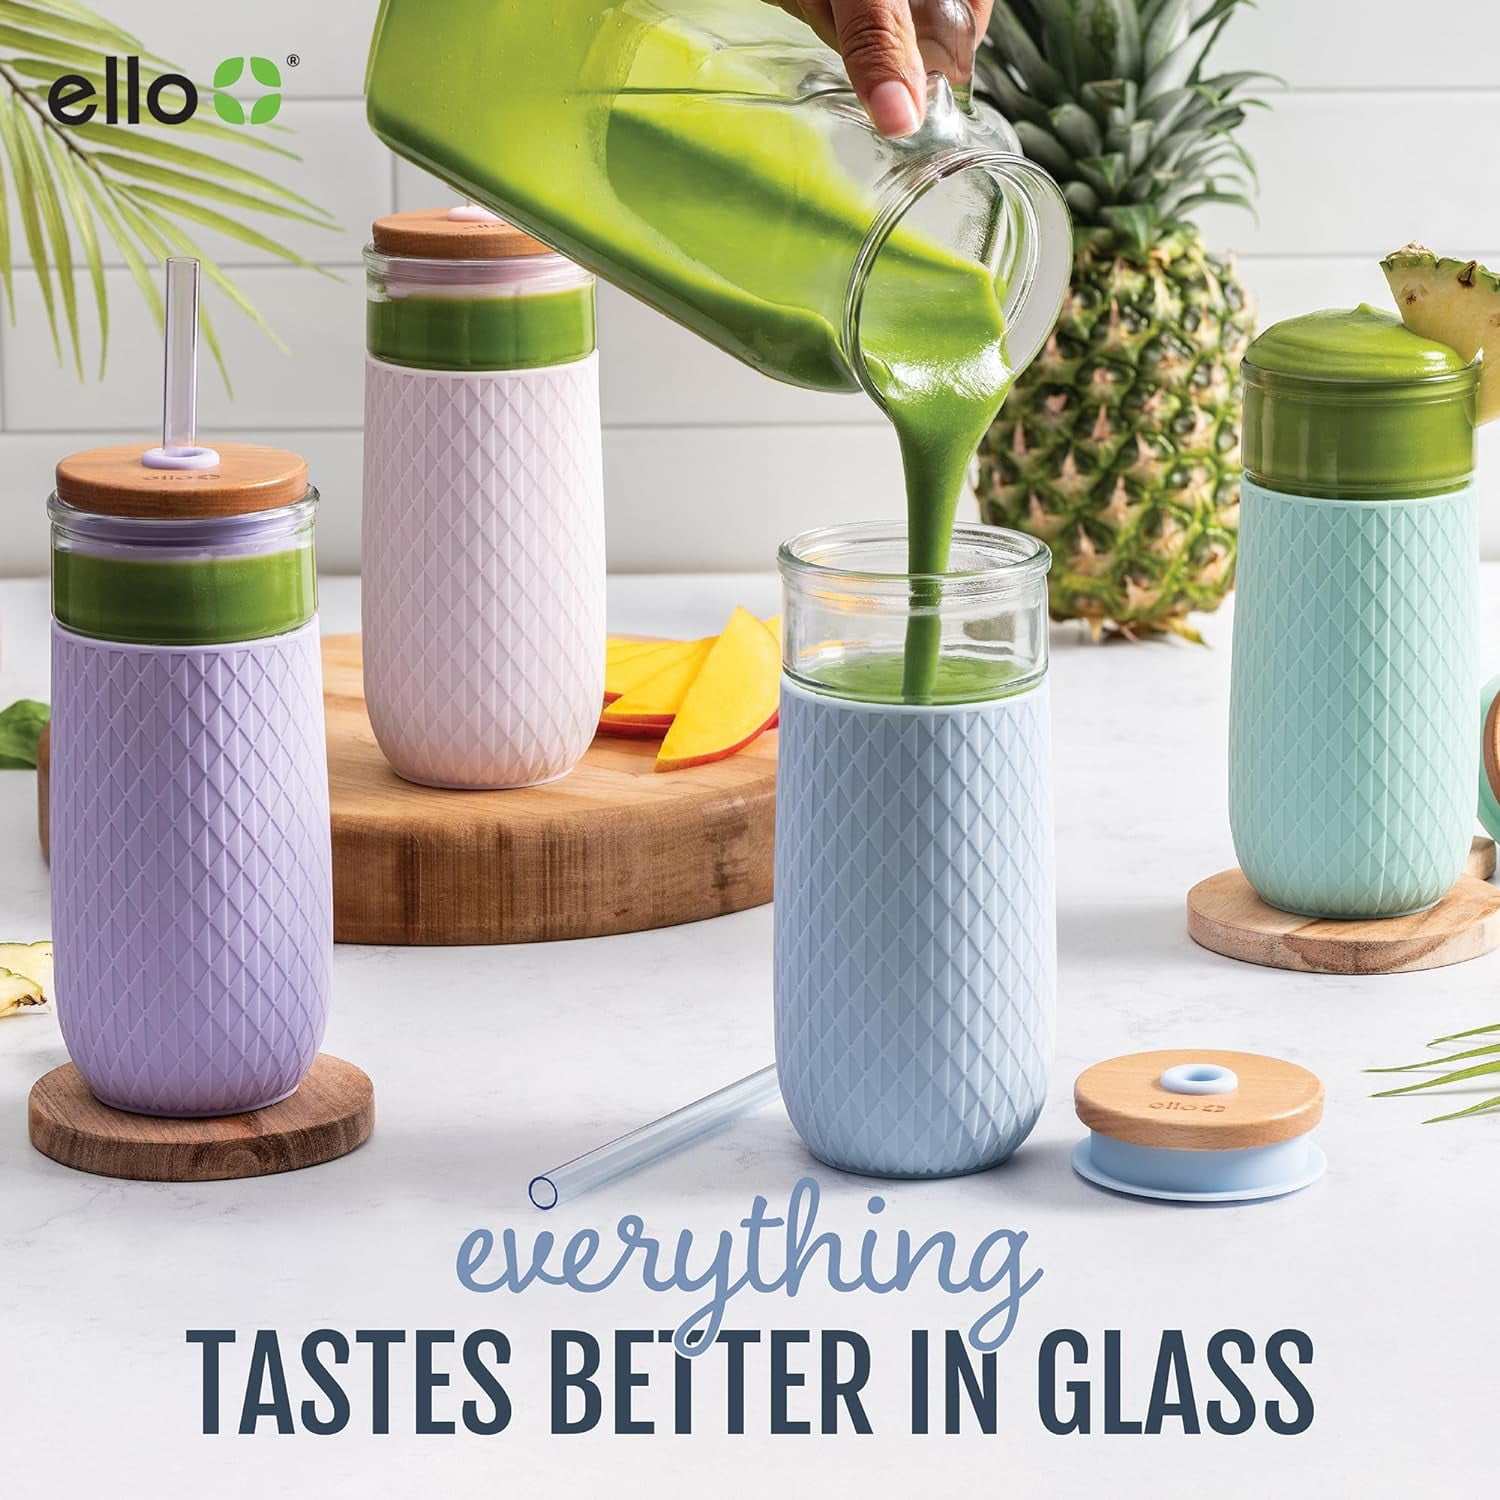  Ello Tidal 20oz Glass Tumbler with Straw, Reusable